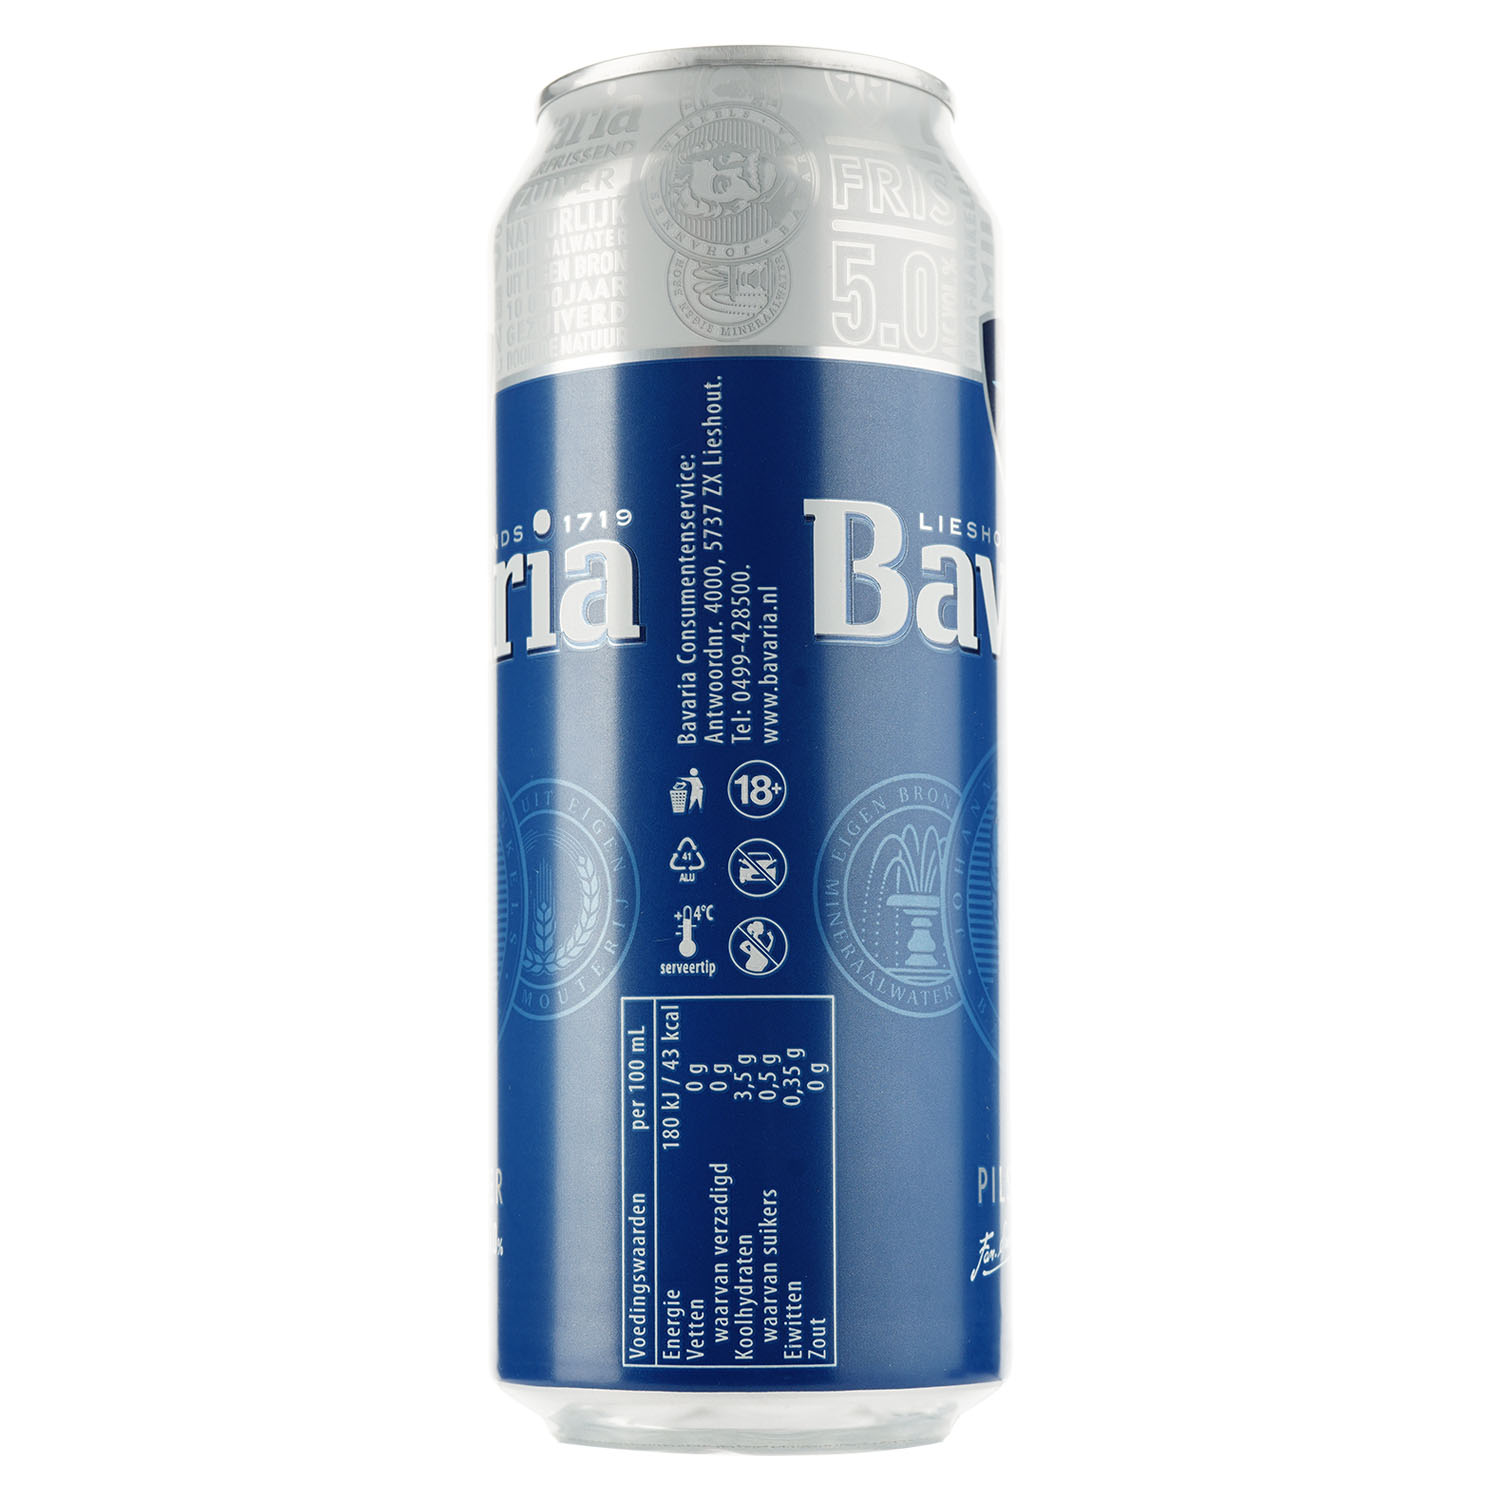 Пиво Bavaria, светлое, фильтрованное, 5%, ж/б, 0,5 л - фото 2